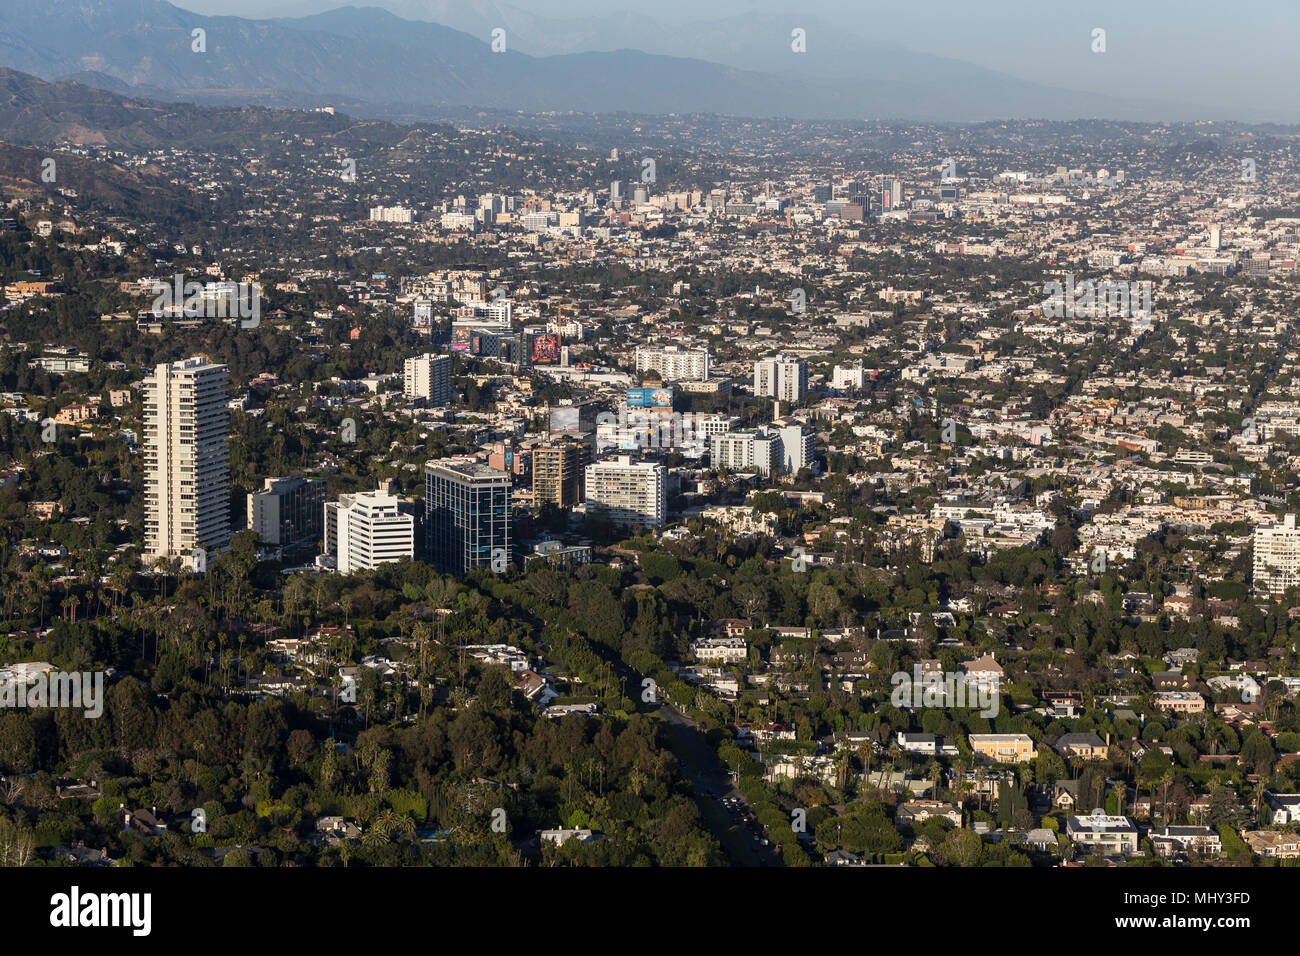 West Hollywood, California, EE.UU. - El 18 de abril, 2018: Vista aérea de las torres y edificios a lo largo del Sunset Strip con Los Ángeles en el fondo. Foto de stock